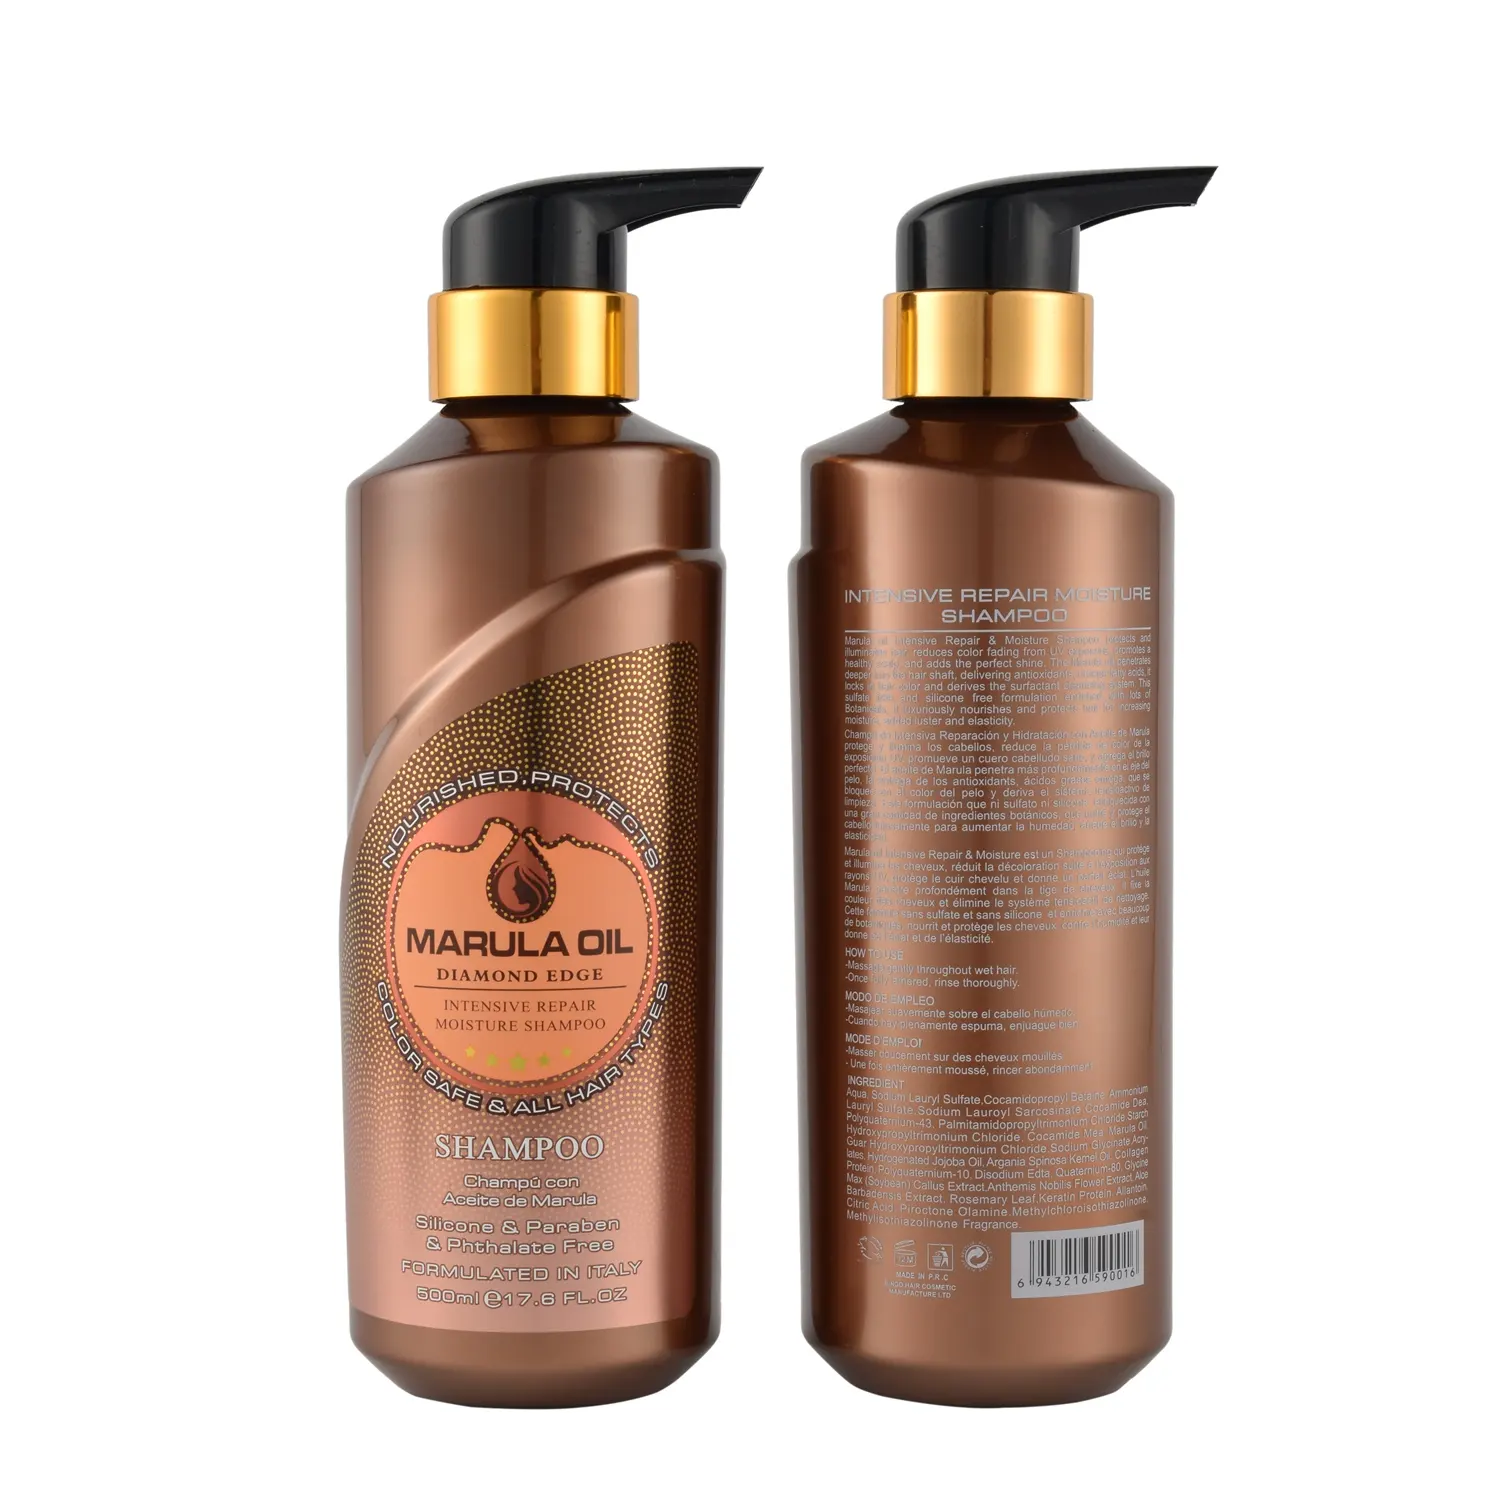 Bingo Private Label 500ml Sulfate Free Best Shampoo Cuidado del cabello Marula Oil Moisture Hair Shampoo